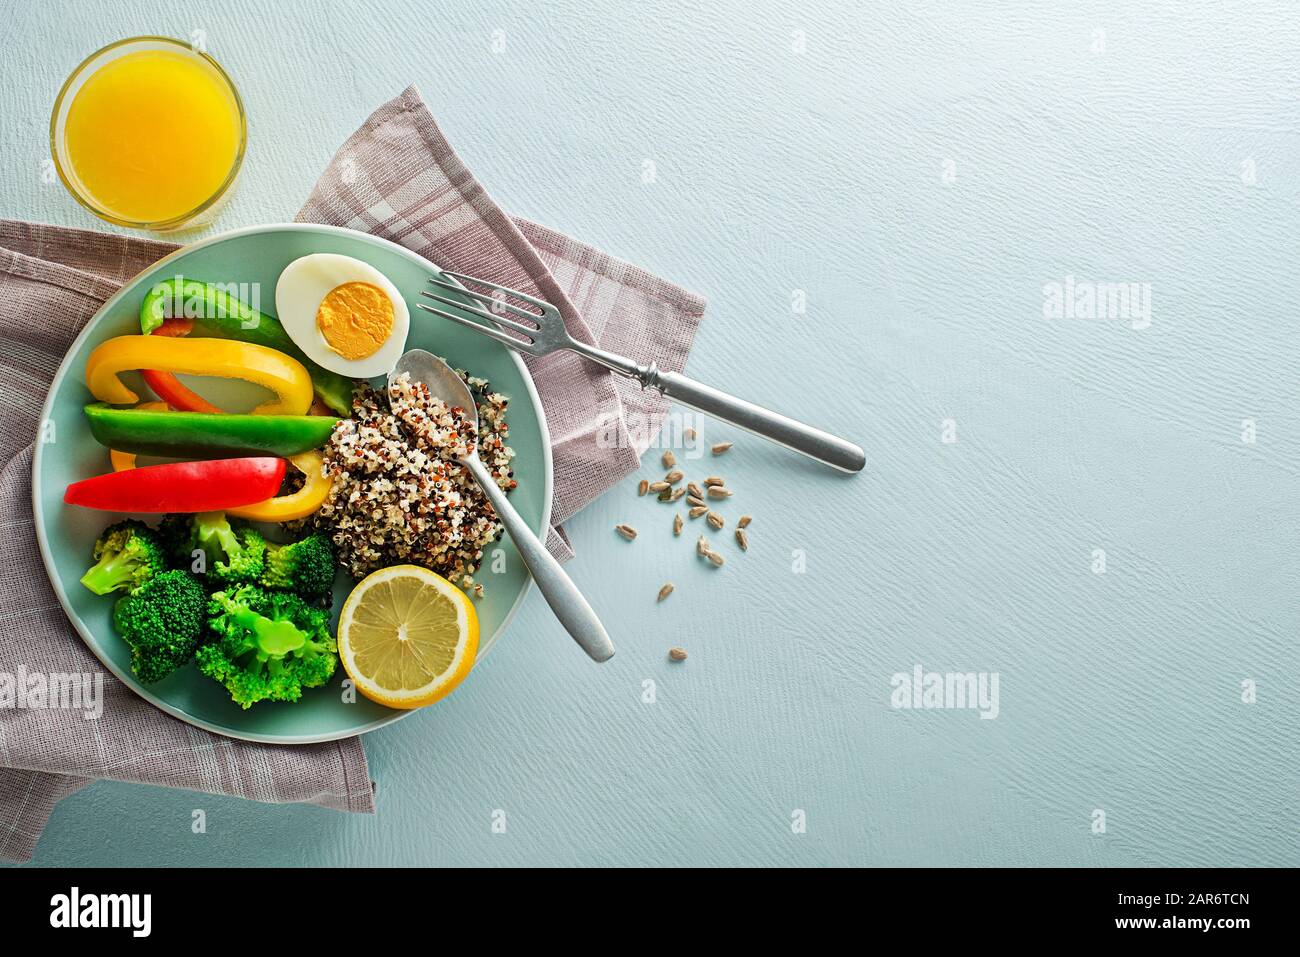 Repas de salade sain avec quinoa, oeuf et légumes de la réash mélangés sur fond bleu vue de dessus. Alimentation et santé. Concept de repas sain Banque D'Images